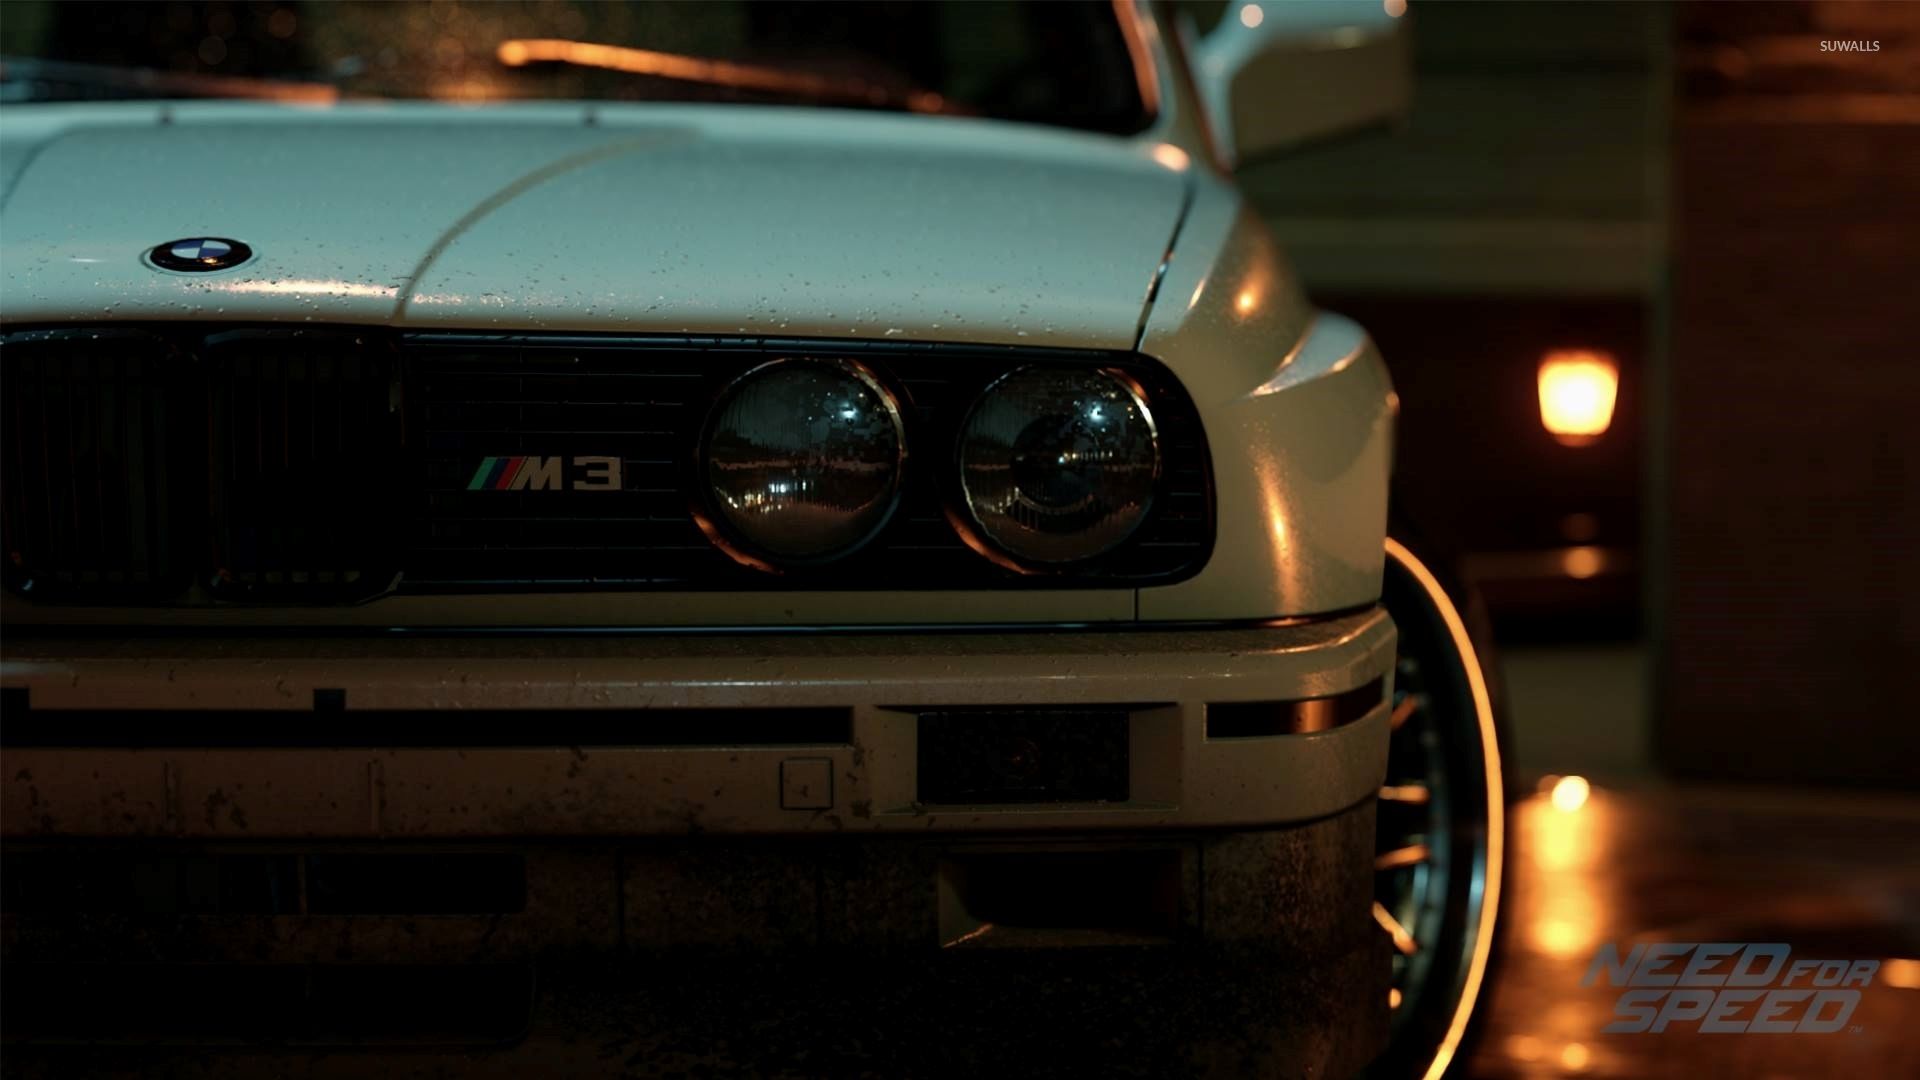 Fondo de pantalla de BMW M3 - Need for Speed - Fondos de pantalla de juegos - # 45875